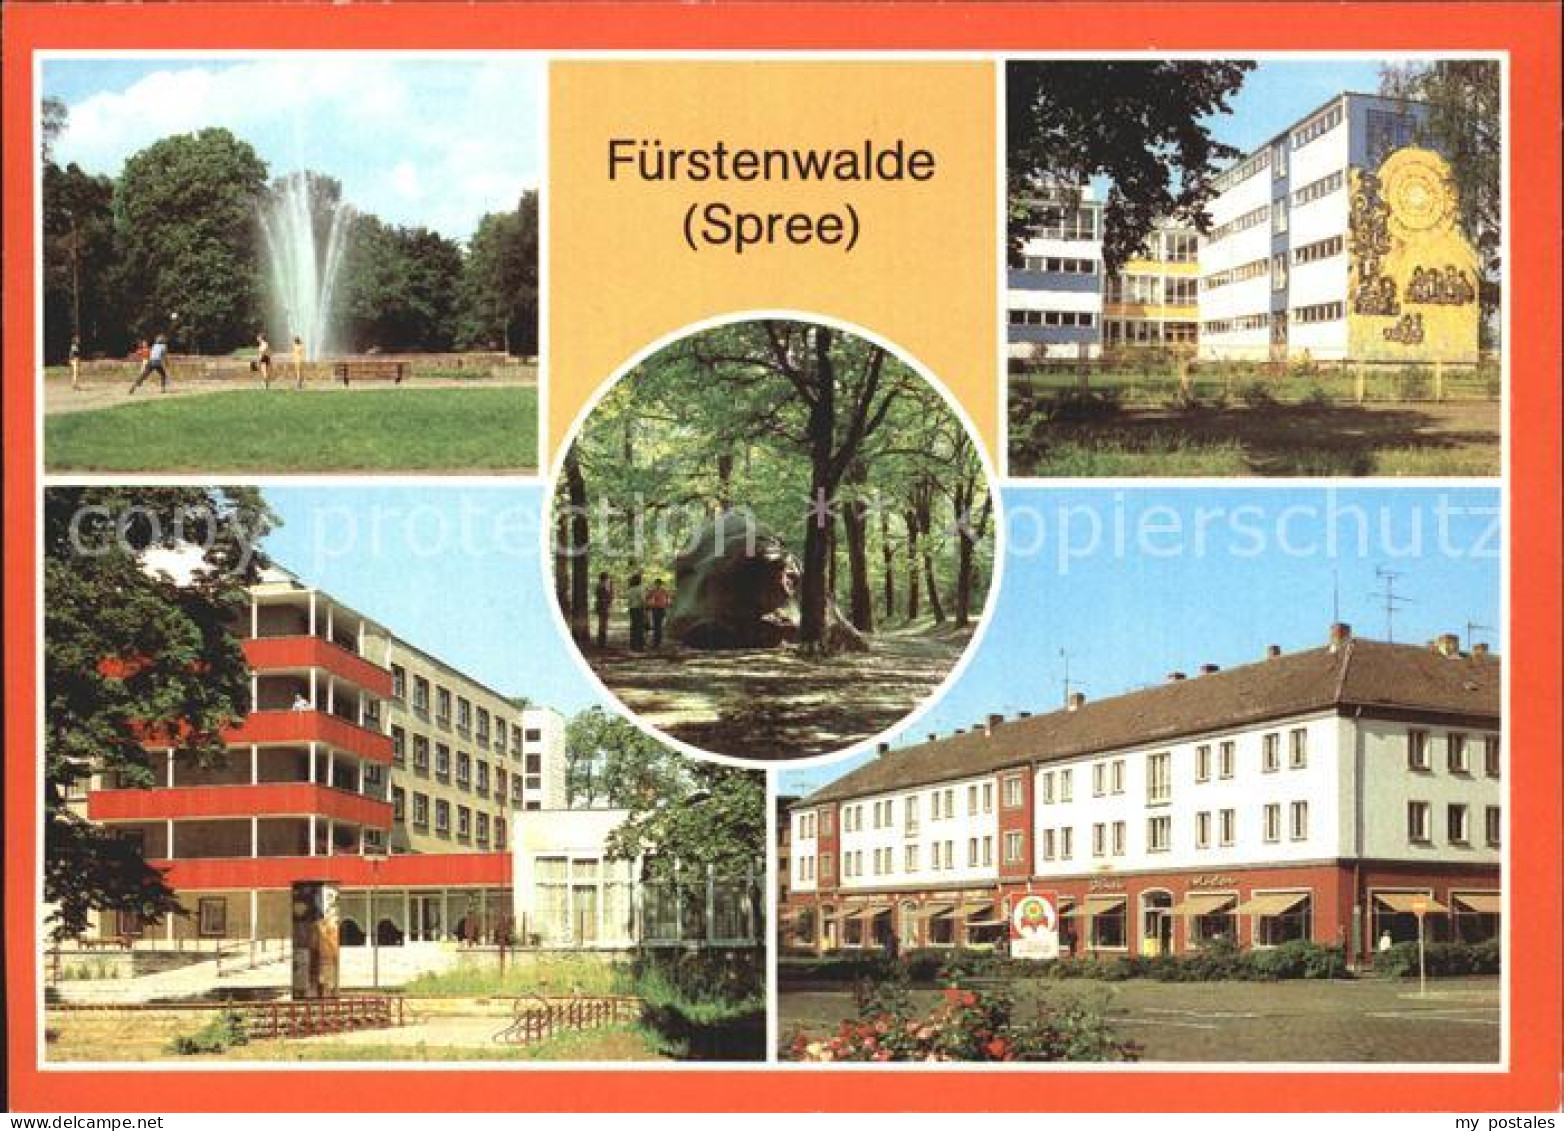 72373058 Fuerstenwalde Spree Park Oberschule Feierabendheim Pflegeheim Rauensche - Fuerstenwalde